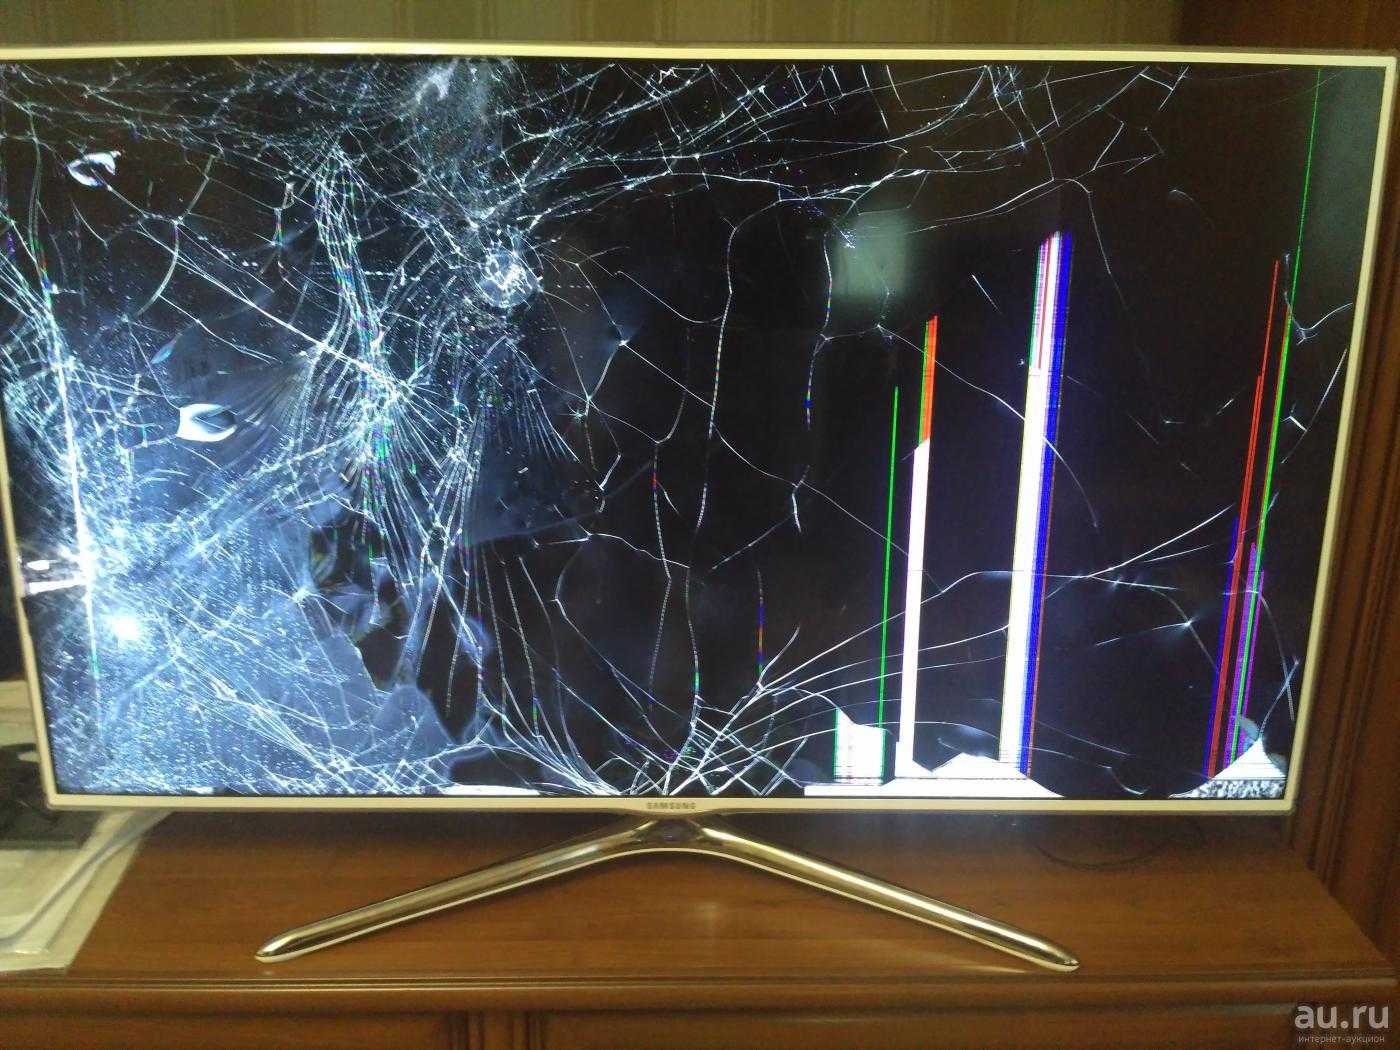 Можно ли отремонтировать плазменный телевизор после удара